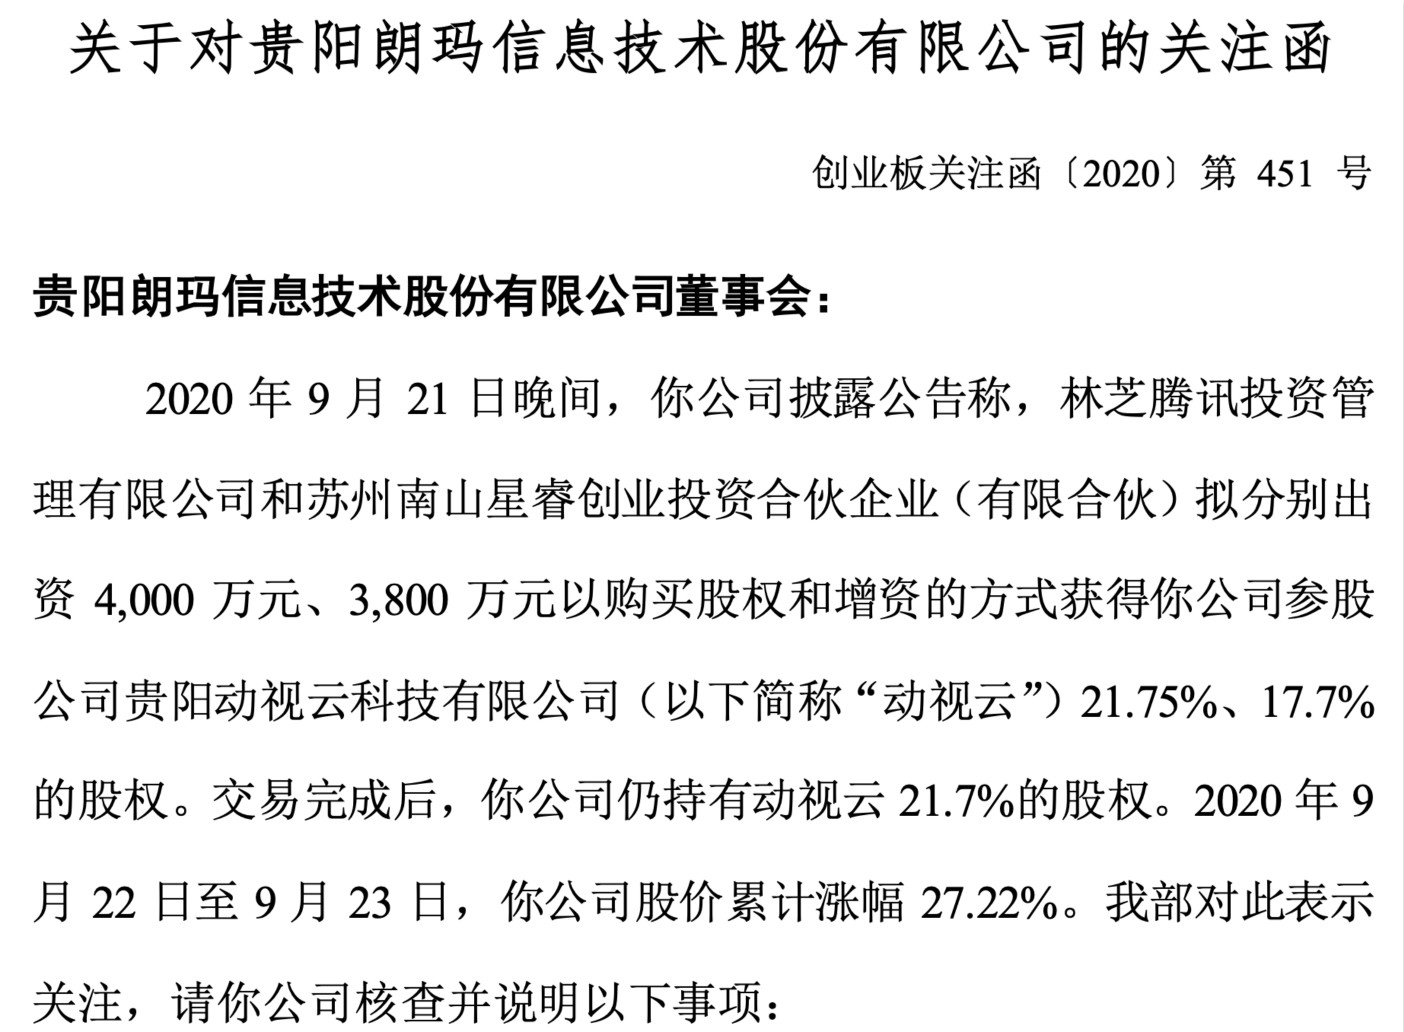 朗玛信息回复深交所问询函 子公司获腾讯投资股价暴涨27%